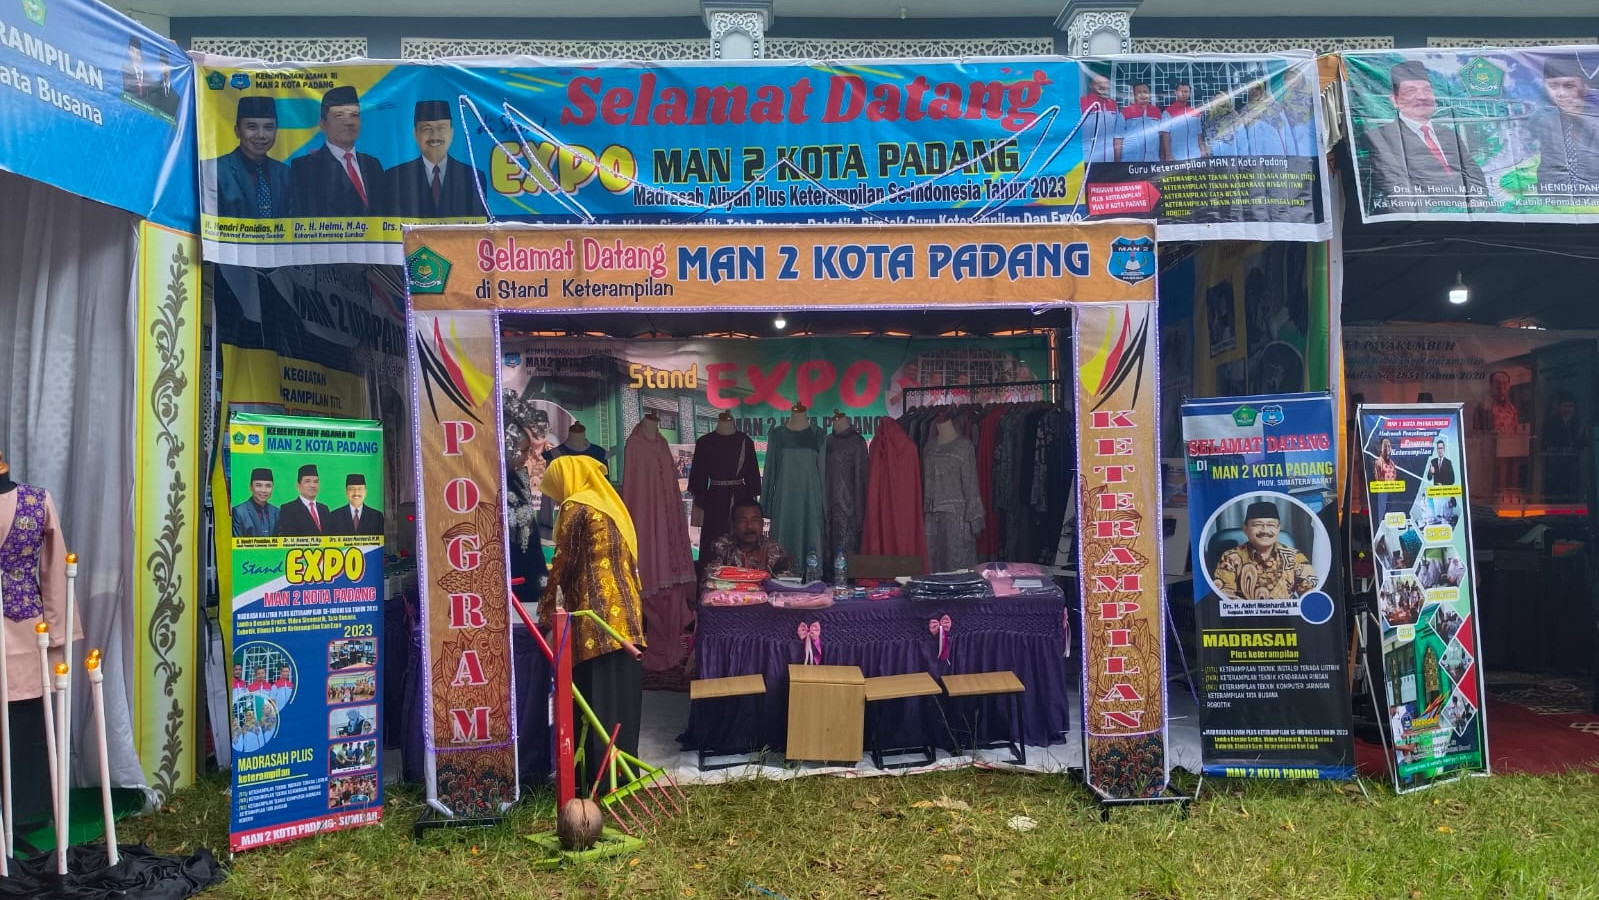 Expo MA Plus Keterampilan di Palembang